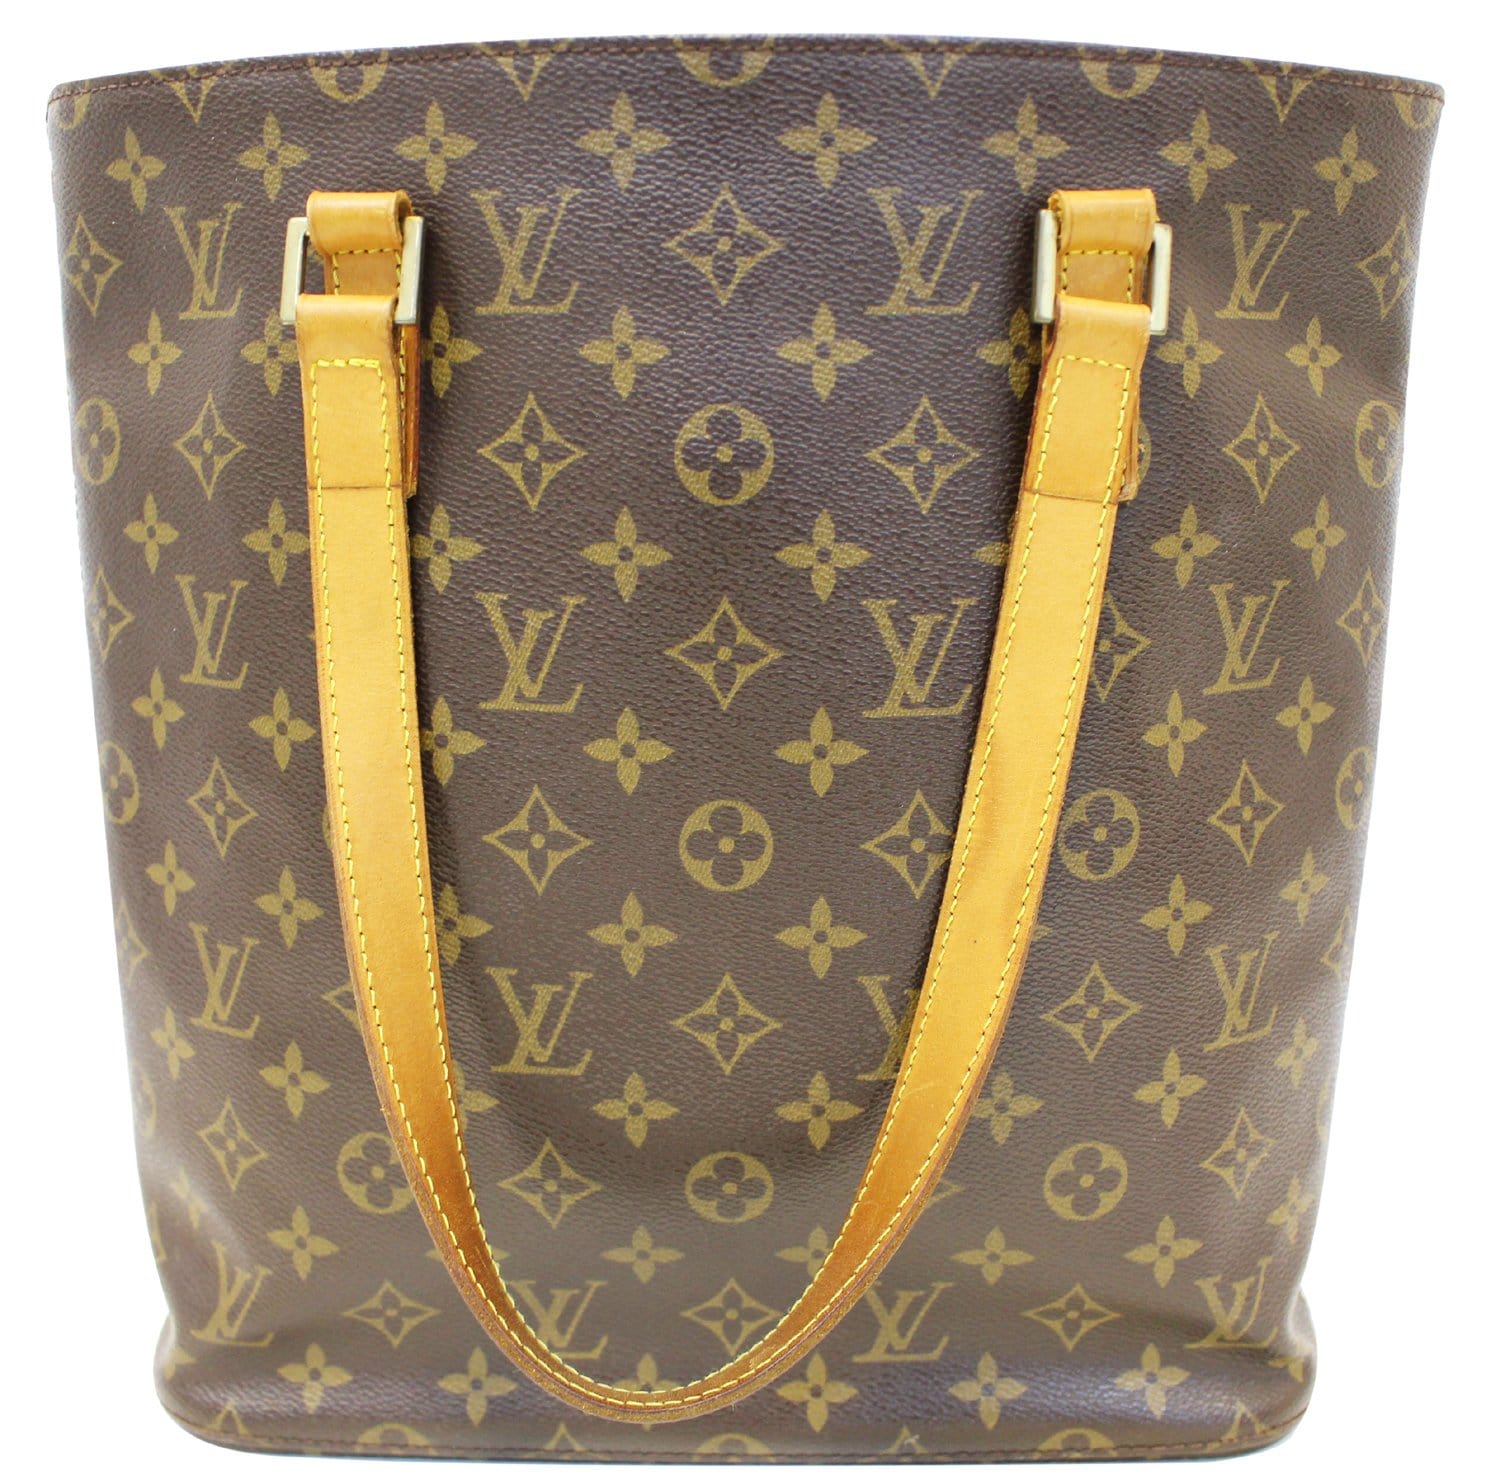 Louis Vuitton Monogram Vavin GM Tote Handbag